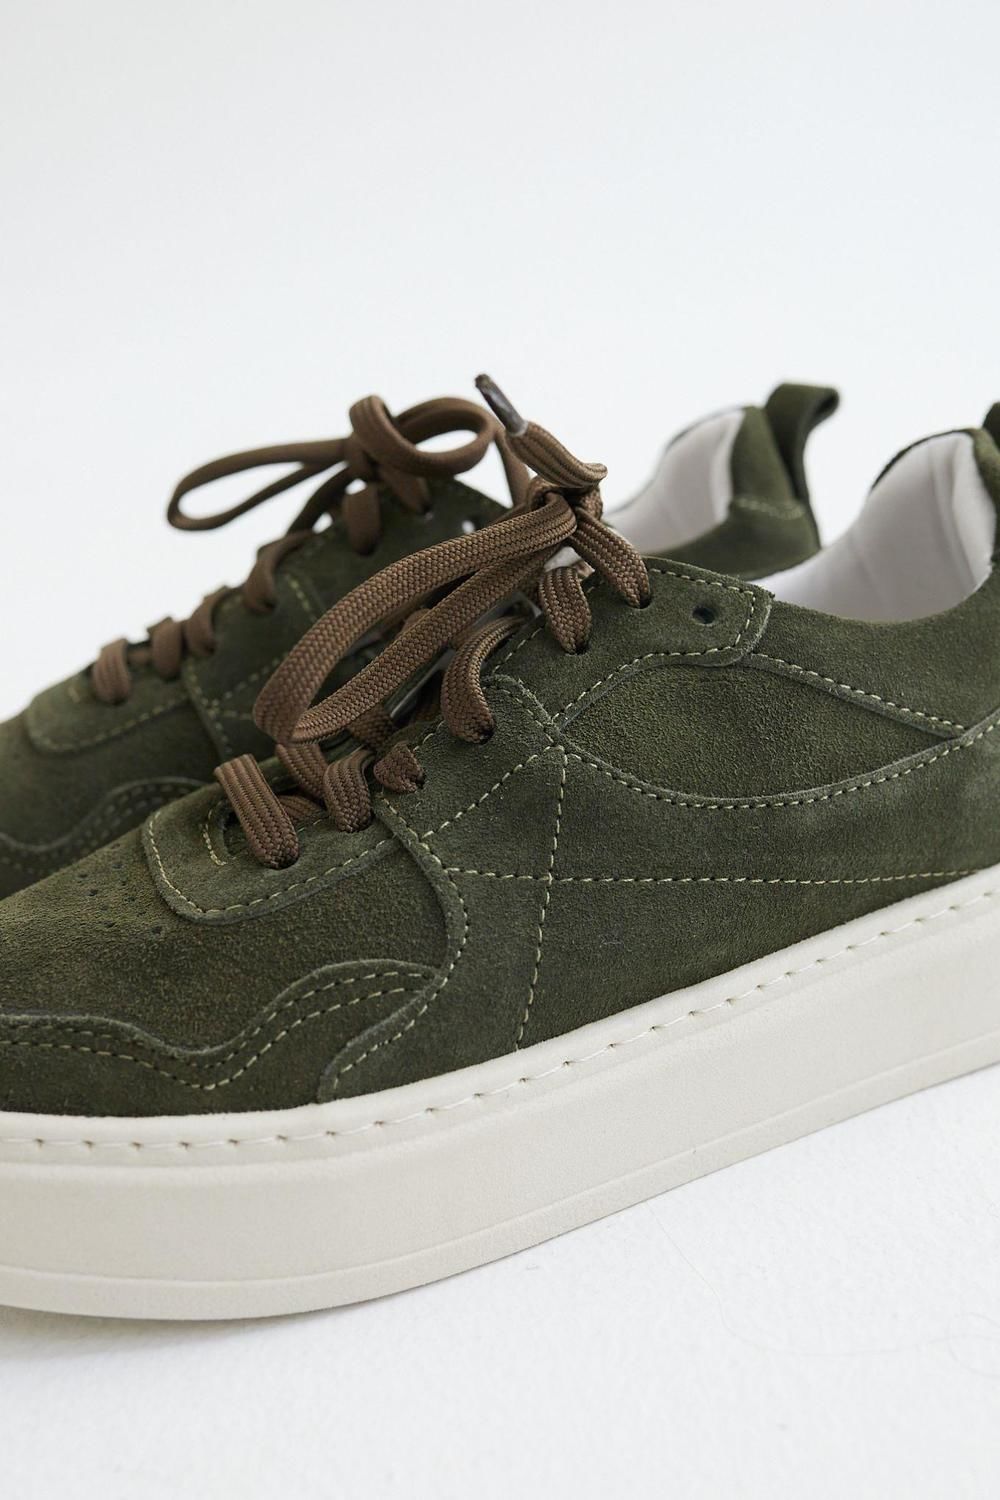 Sneakers Pul verde oliva 36